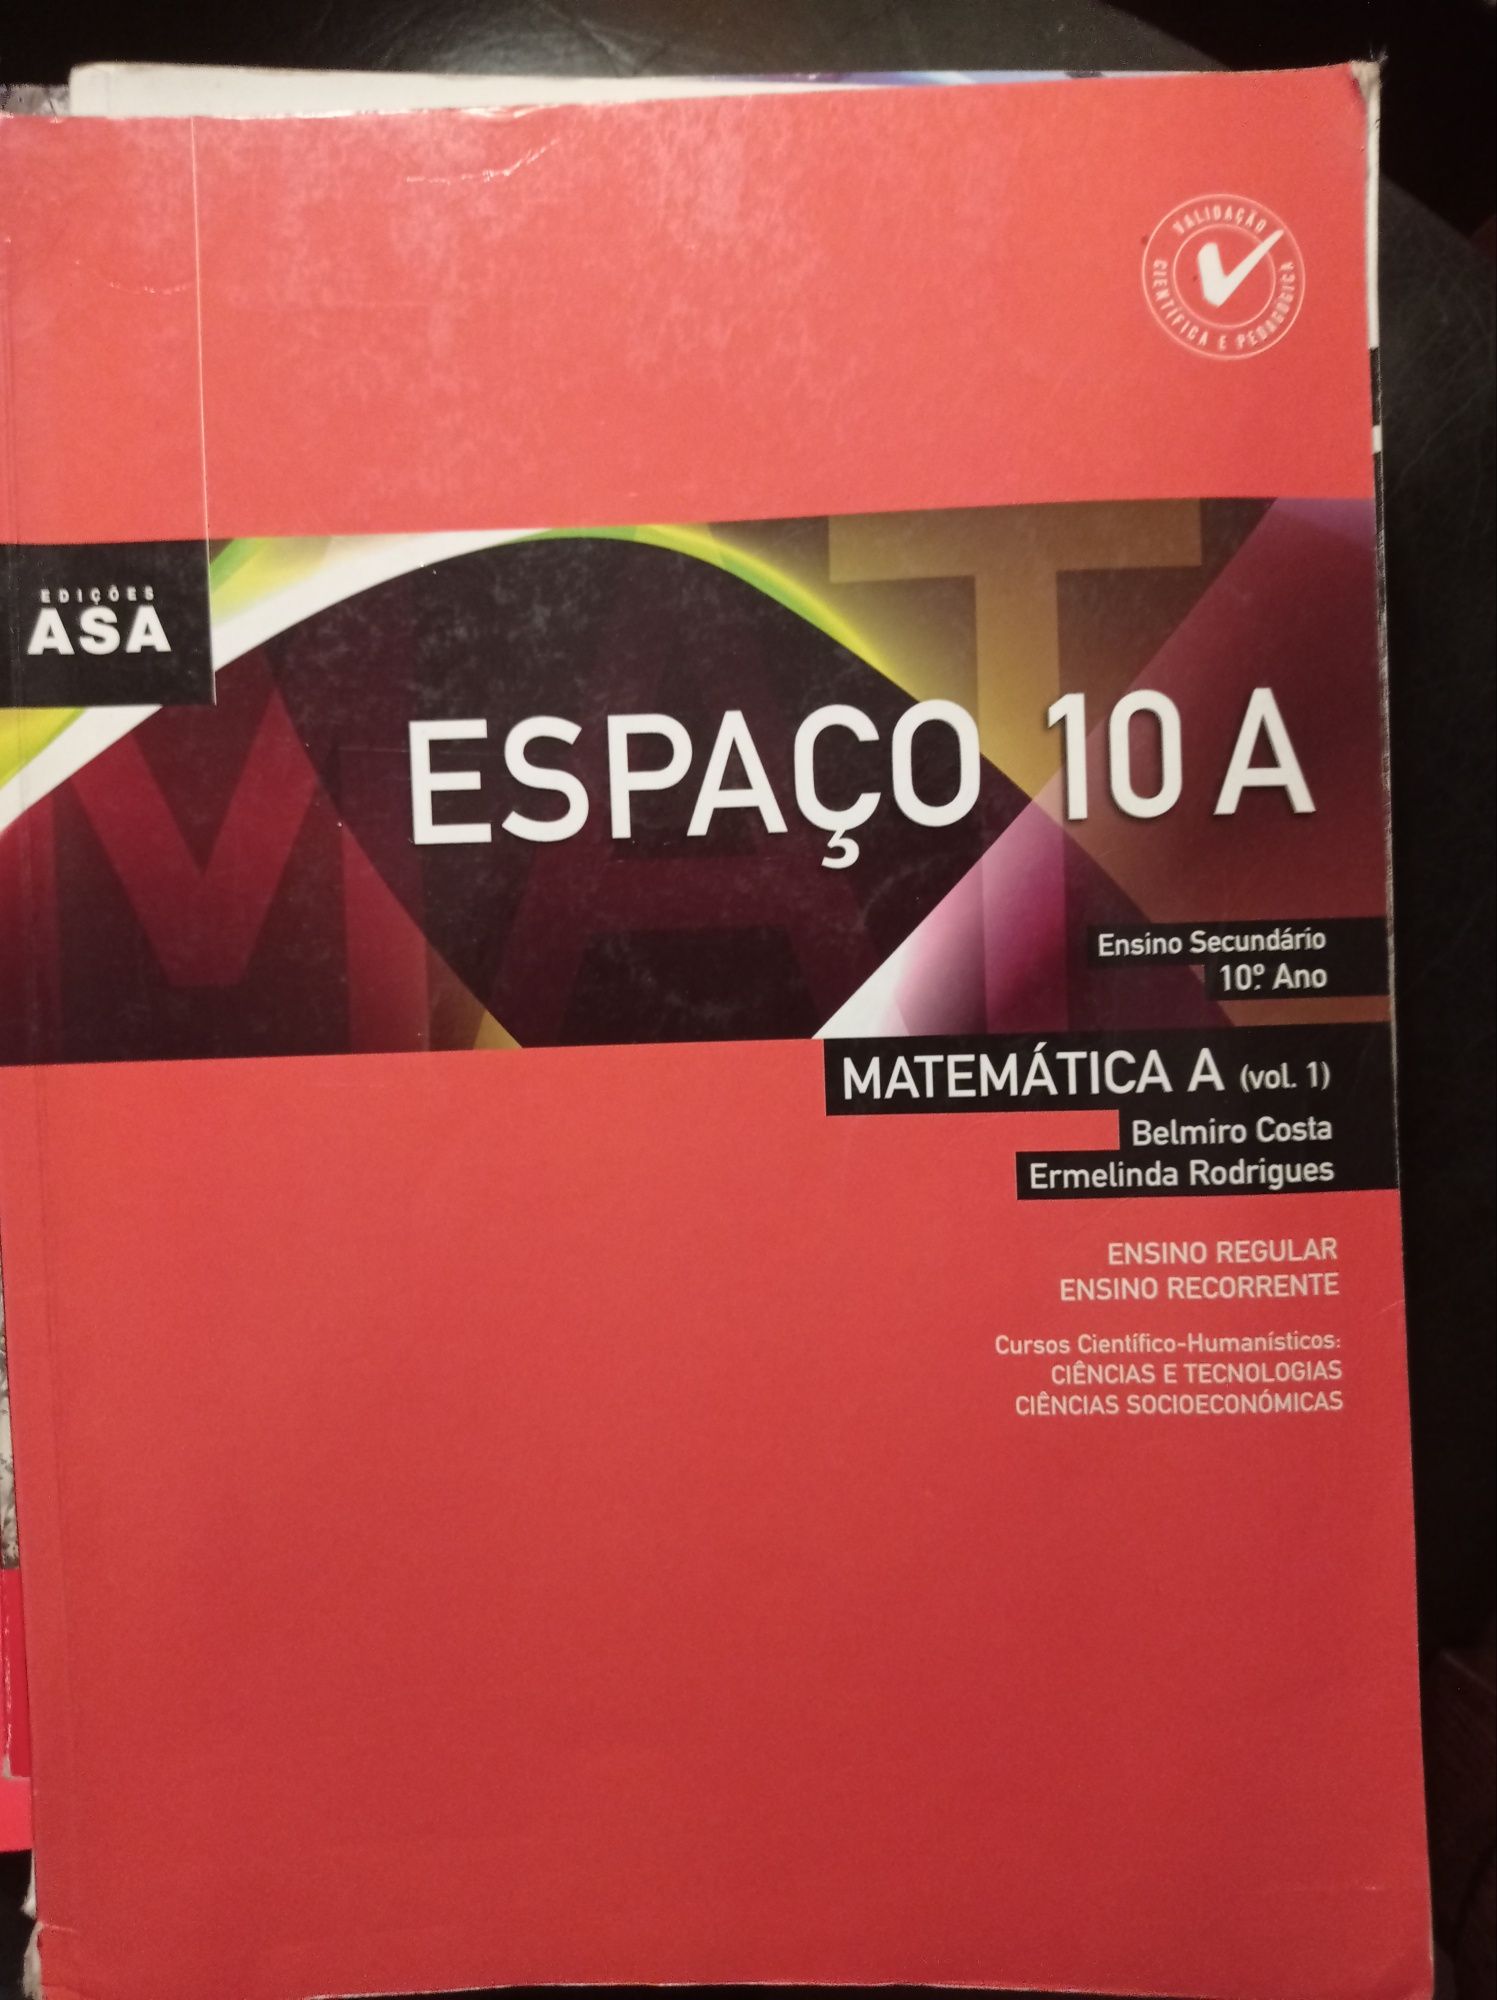 Vendo Livro "Espaço 10A", Matemática A 10°ano.